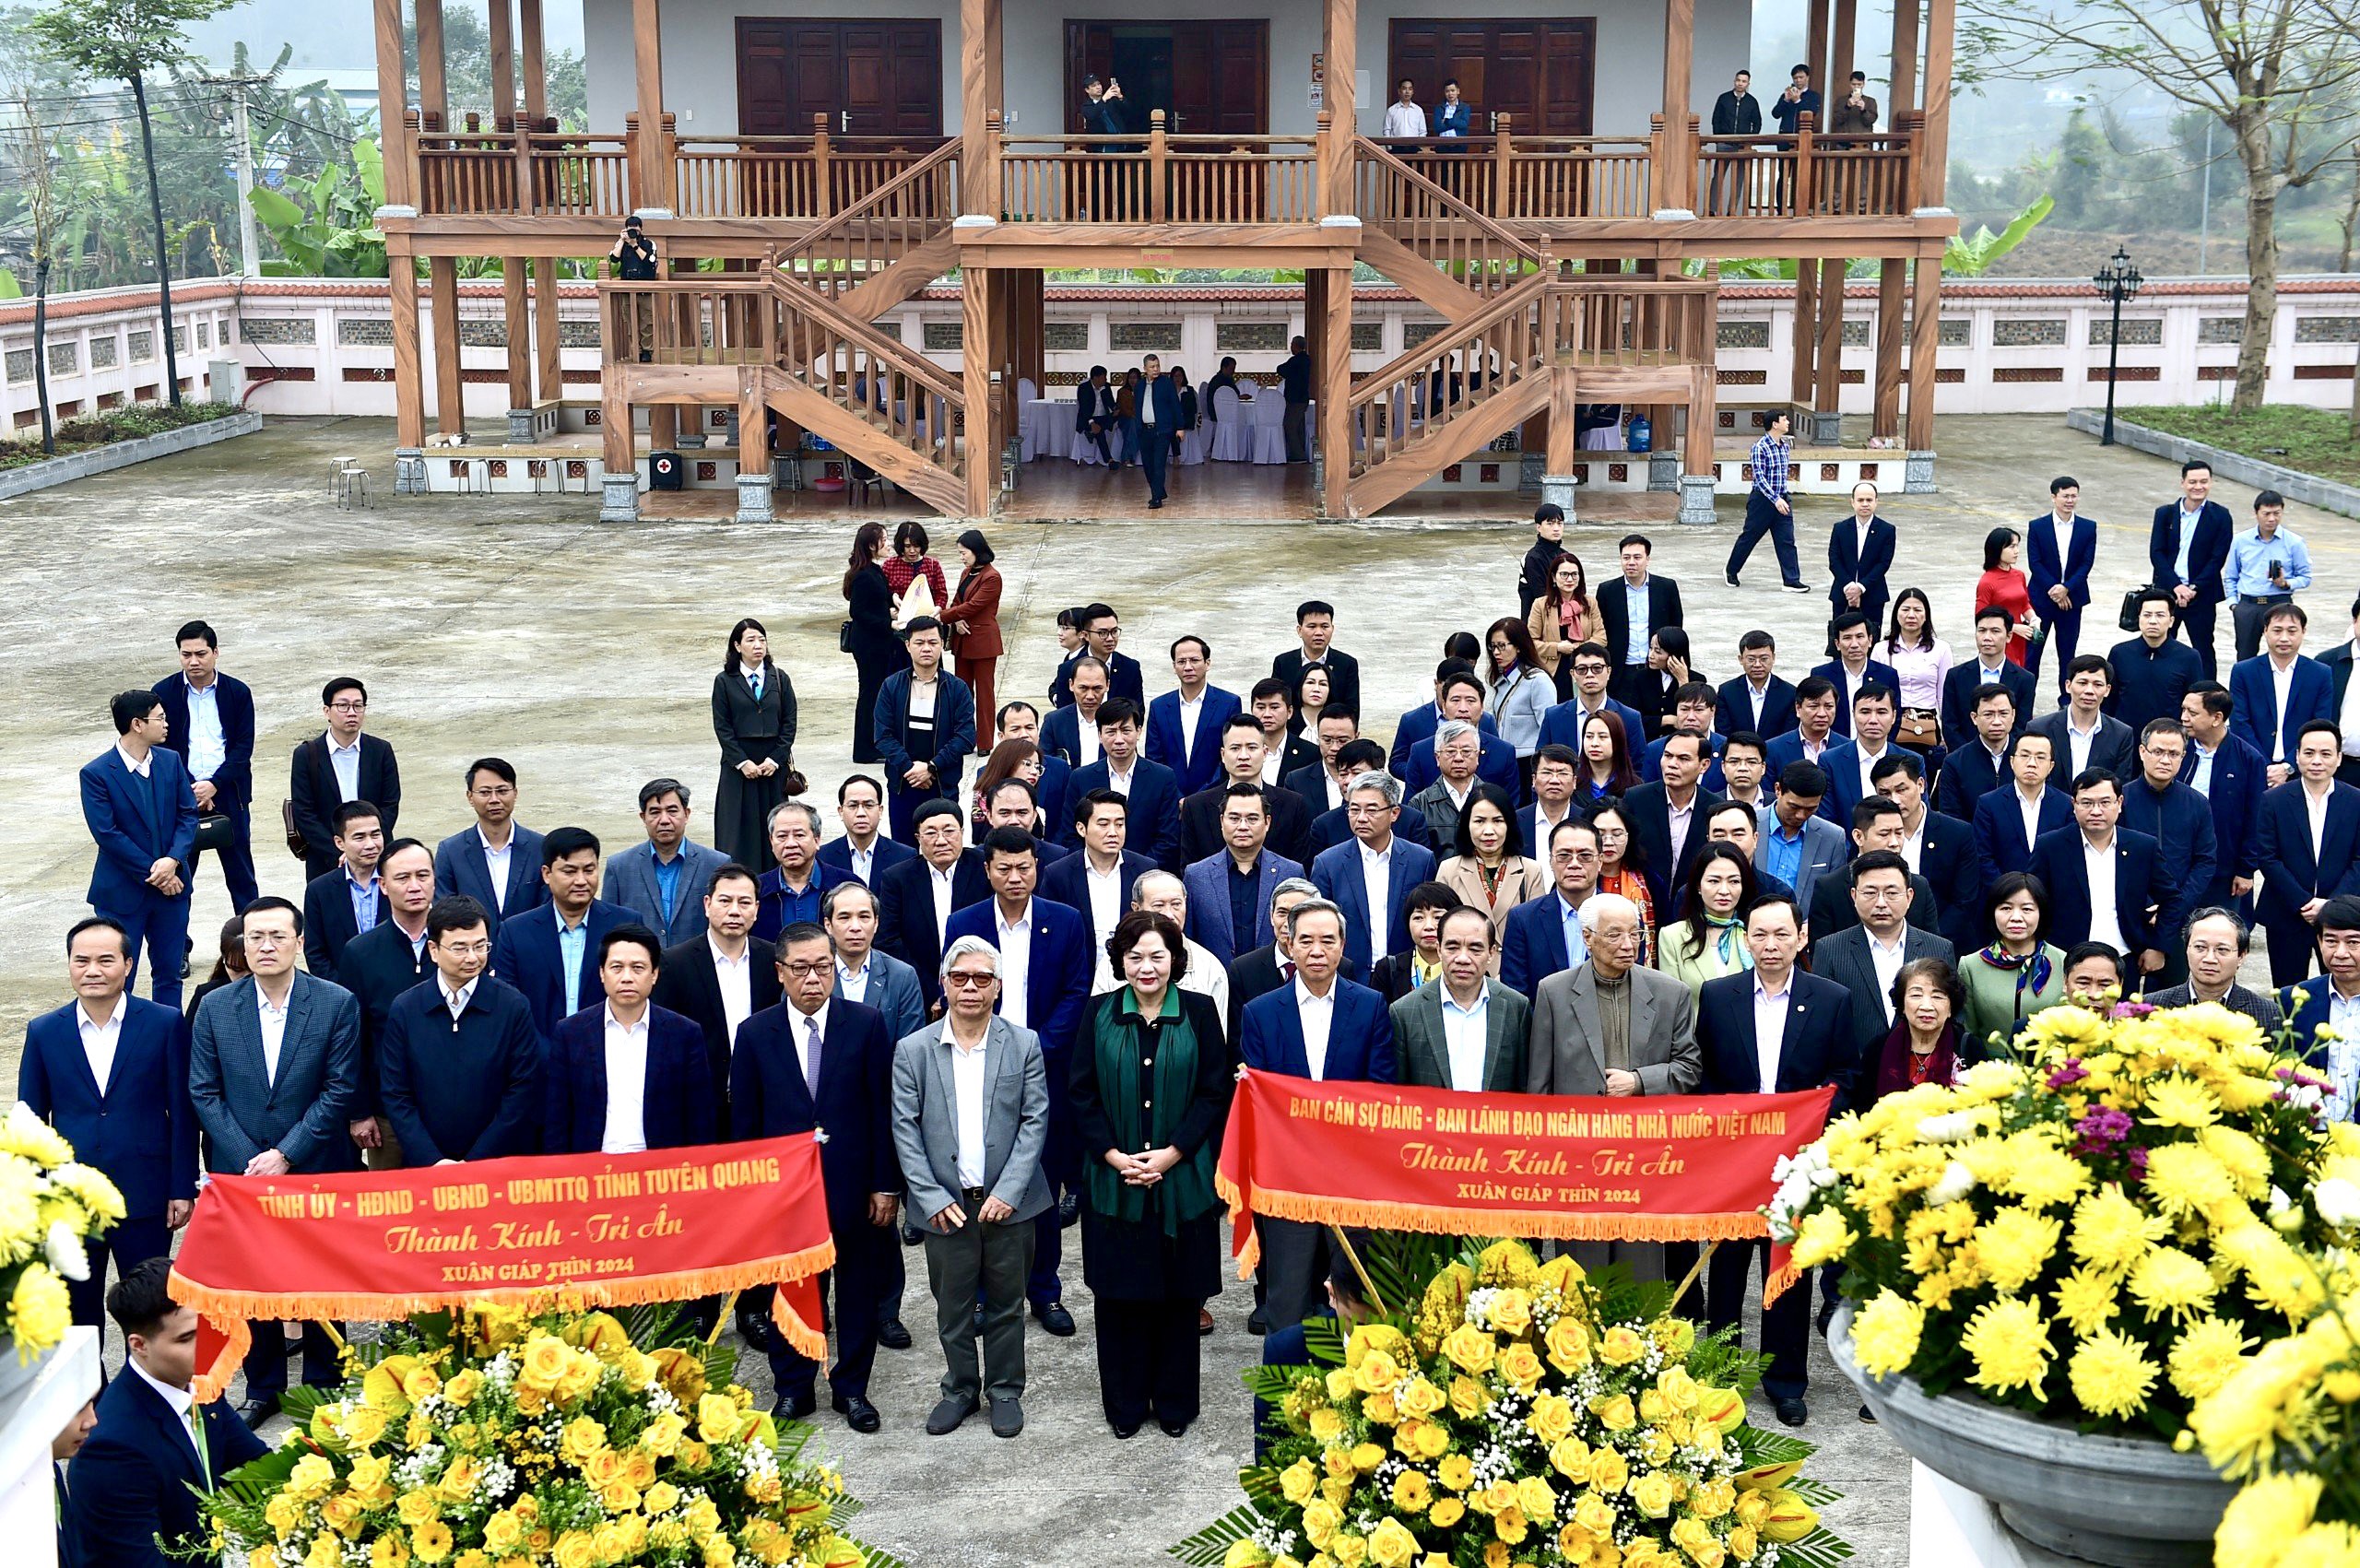 Thống đốc NHNN Nguyễn Thị Hồng và Đoàn cán bộ chủ chốt ngành Ngân hàng dâng hoa, dâng hương bày tỏ tấm lòng thành kính đến các thế hệ đi trước đã có những đóng góp to lớn cho sự xây dựng, phát triển của Ngành.